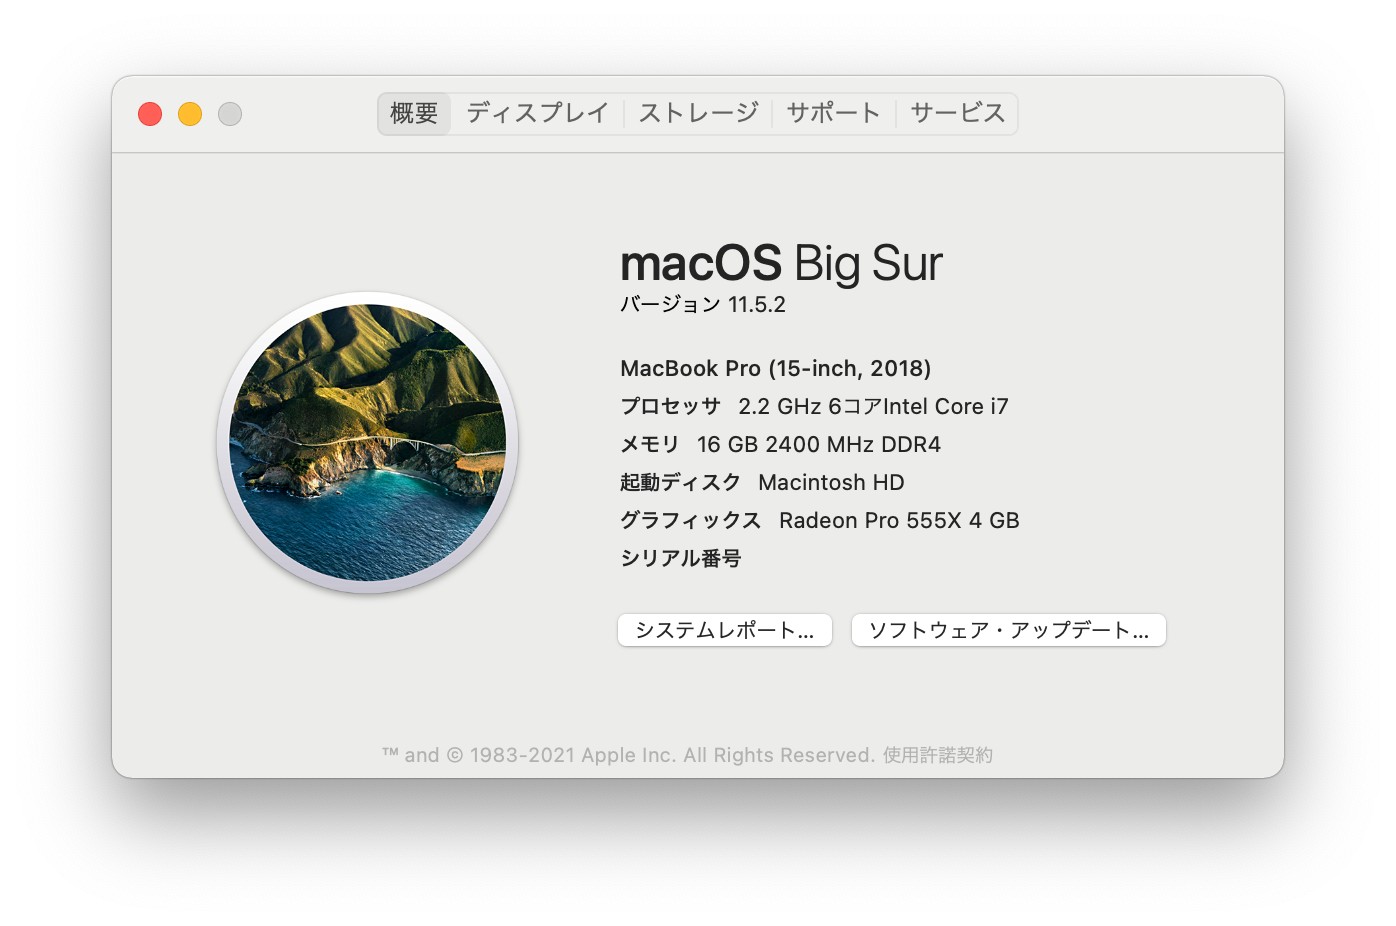  macOS Big Sur 11.5.2